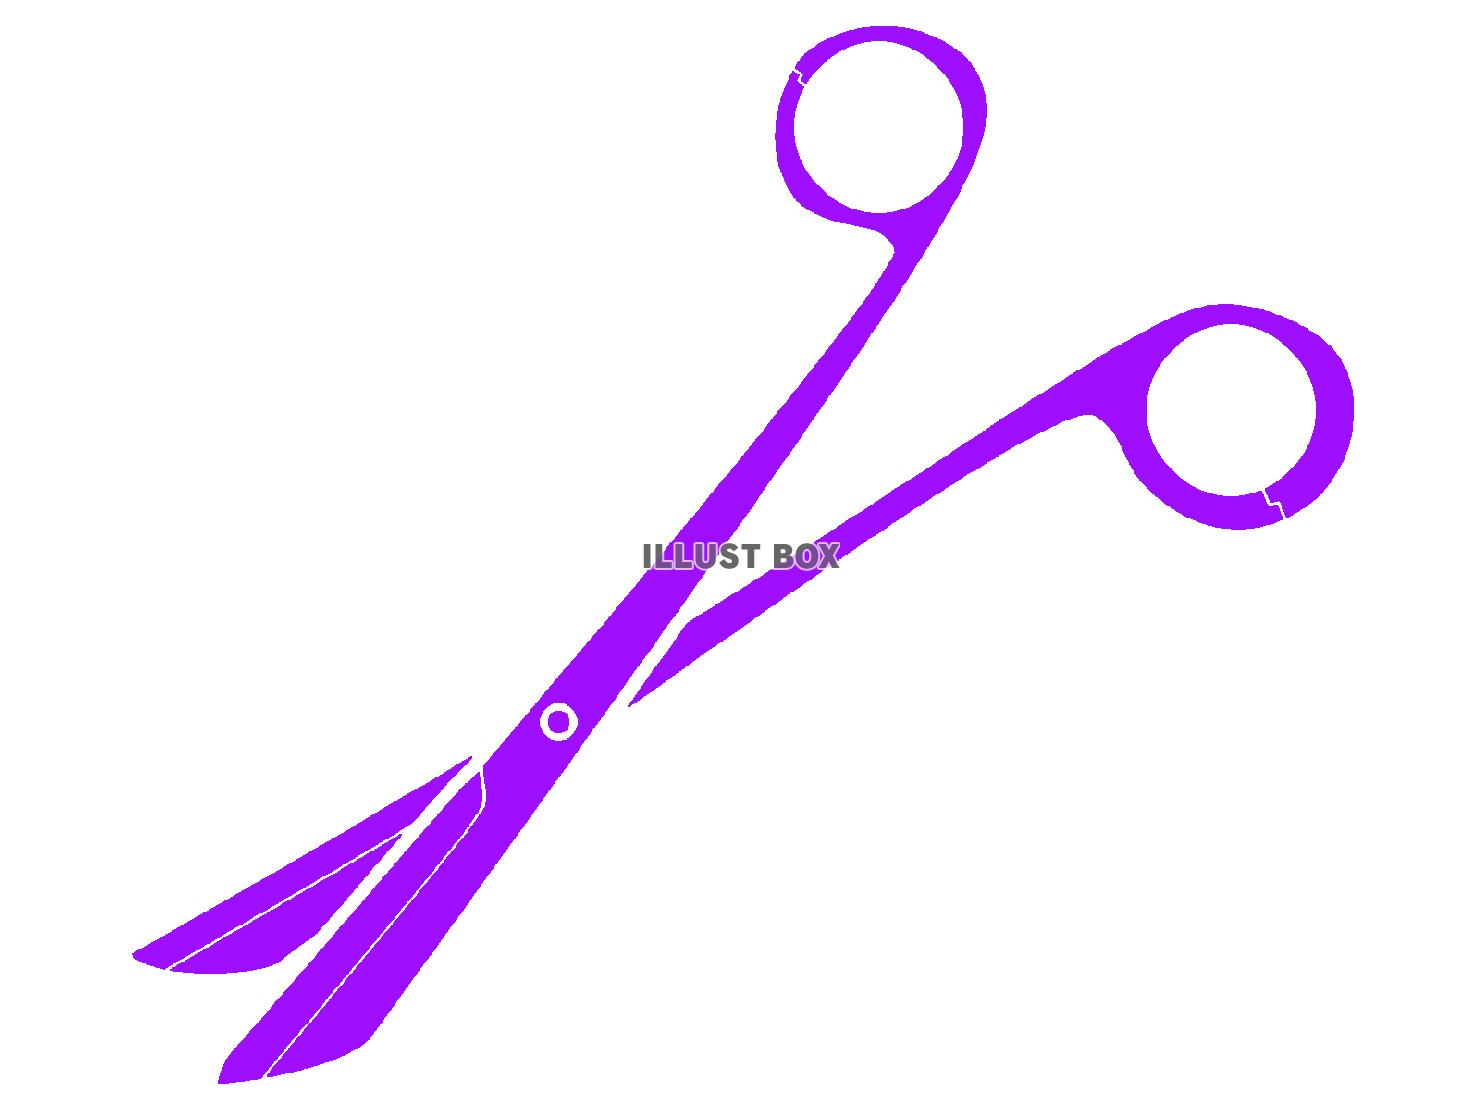 紫色モチーフの抜糸剪刀のシルエット